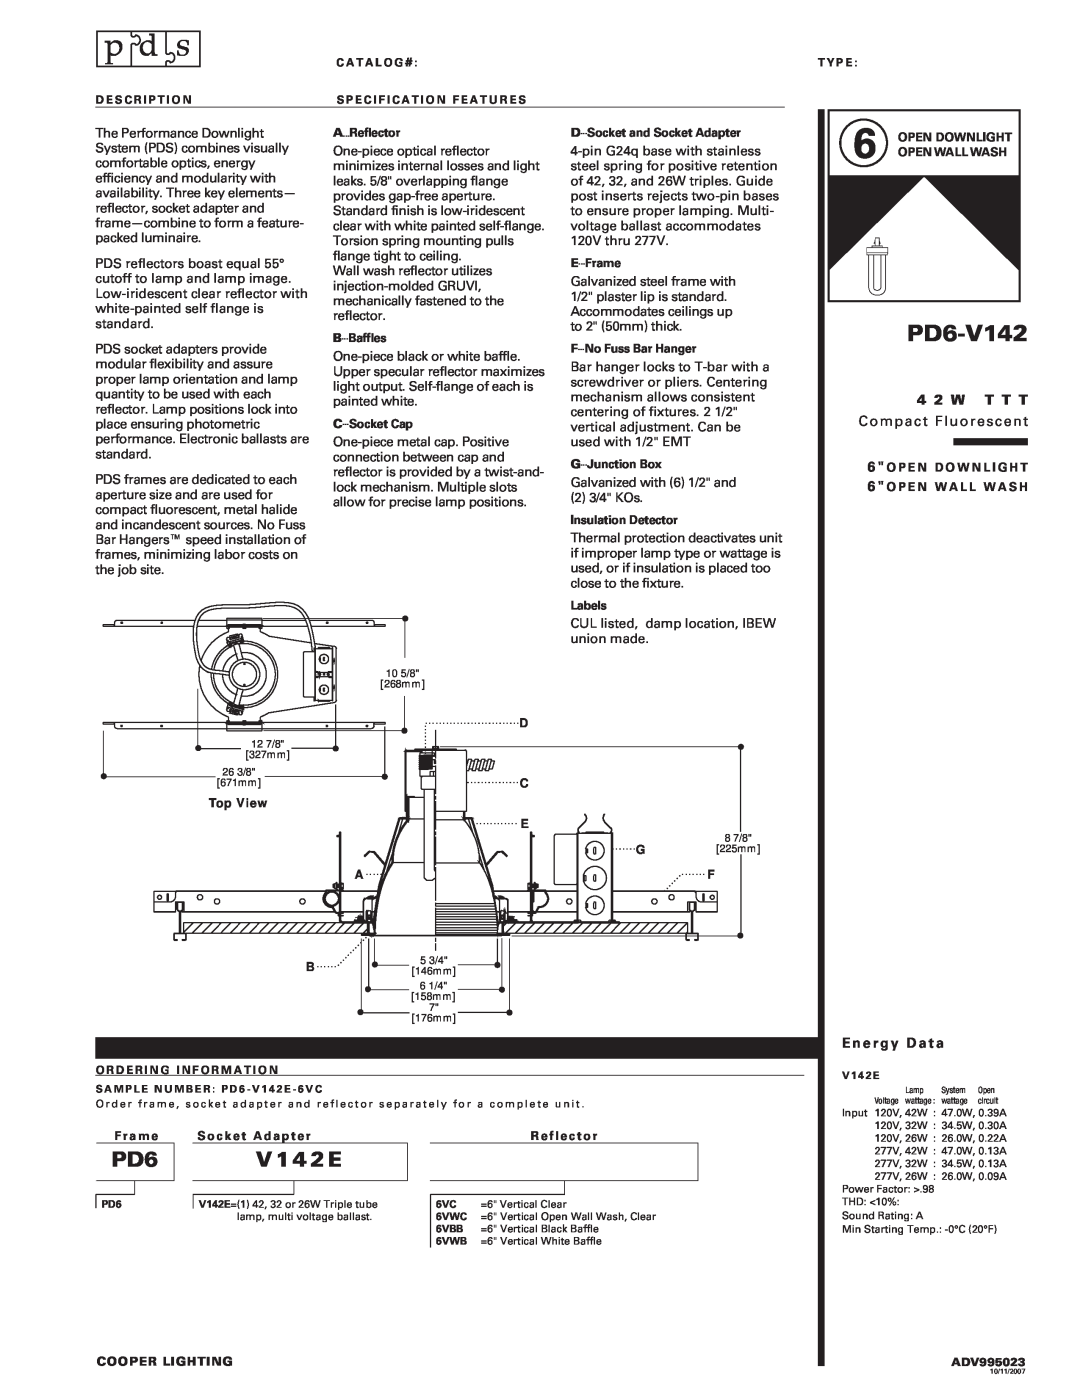 Cooper Lighting PD6-V142 manual V 14 2 E, 4 2 W T T T, Compact Fluorescent, Energy Data 